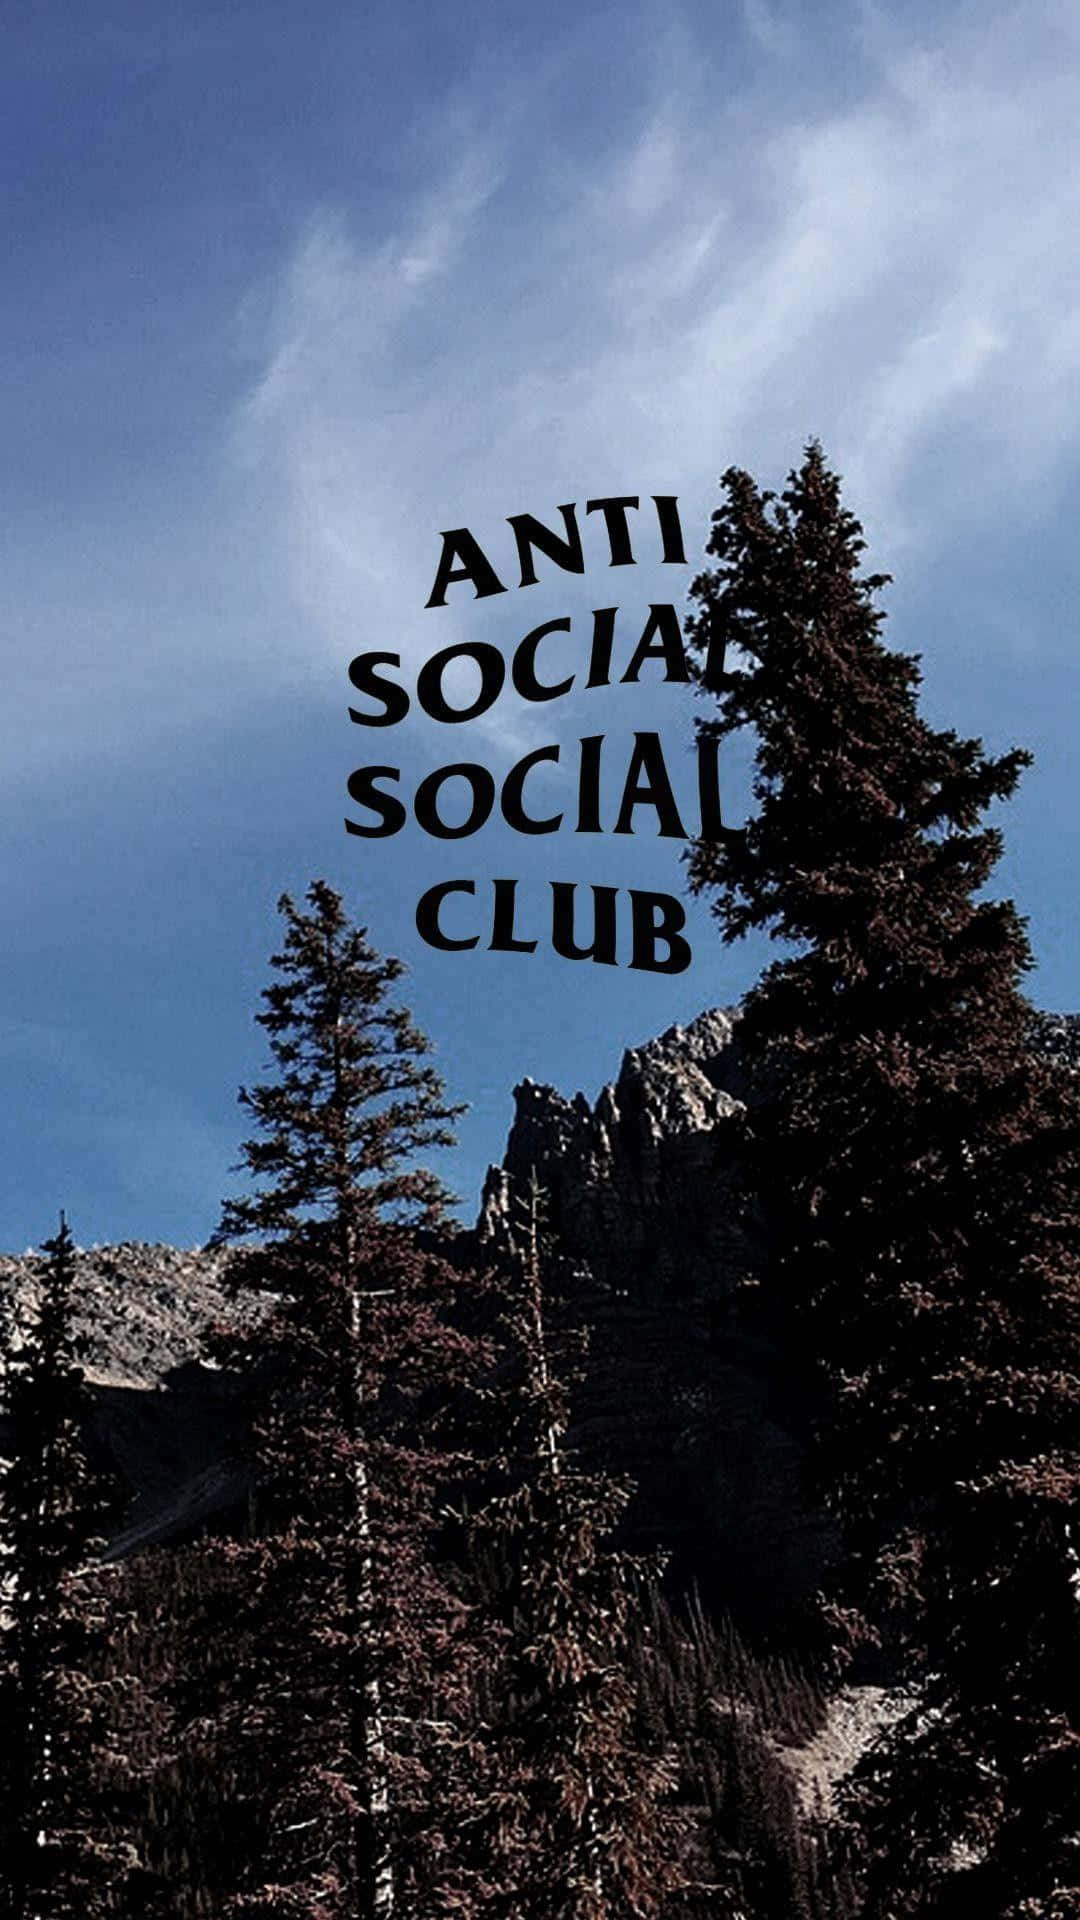 Bosquey Logotipo De Anti Social Club Para Iphone. Fondo de pantalla